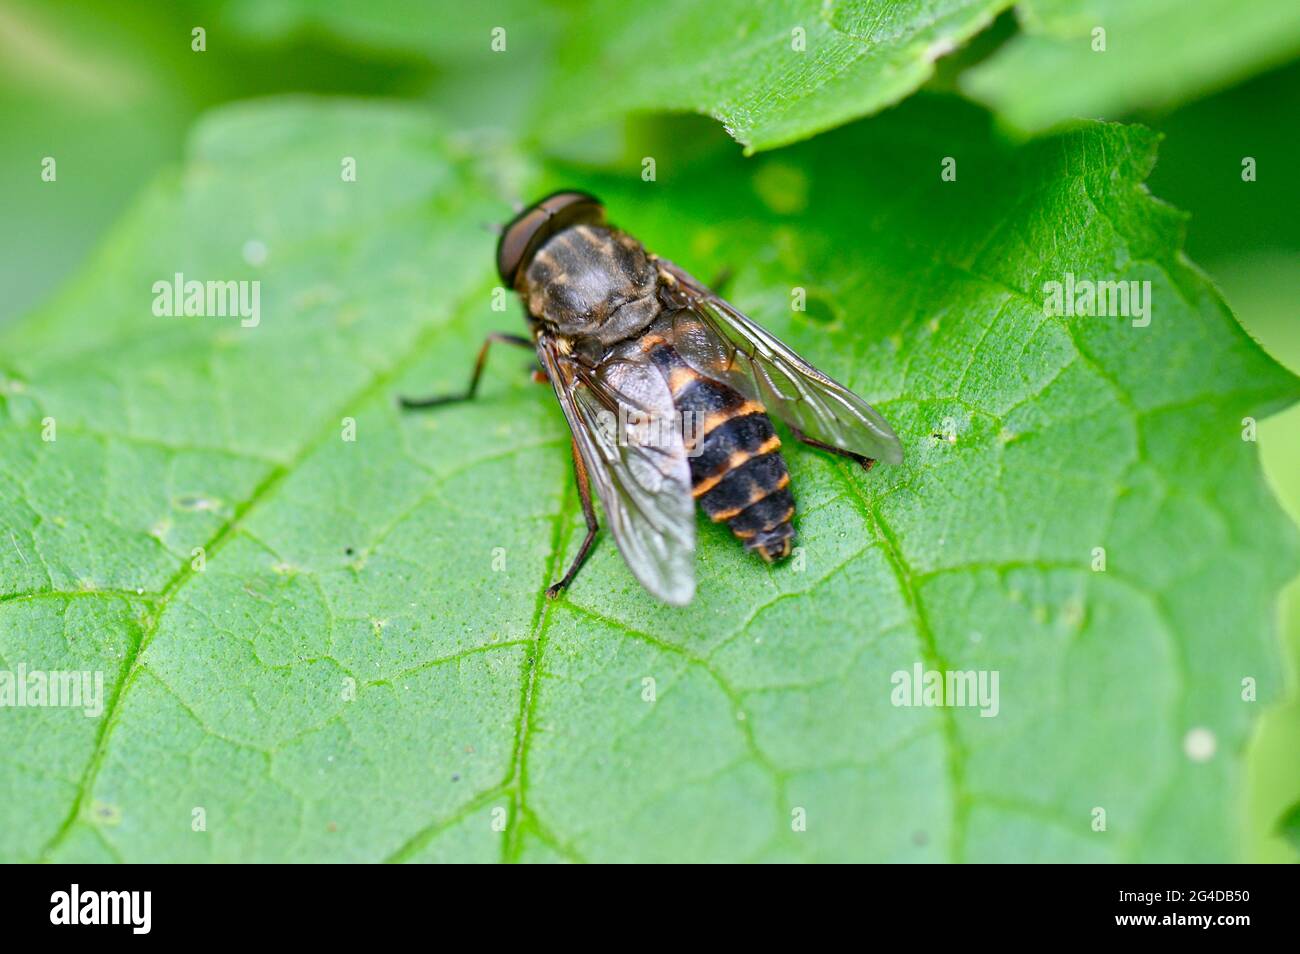 Andrena - Sandbiene - Erdbiene - auf einem Blatt sitzend von oben Stock Photo